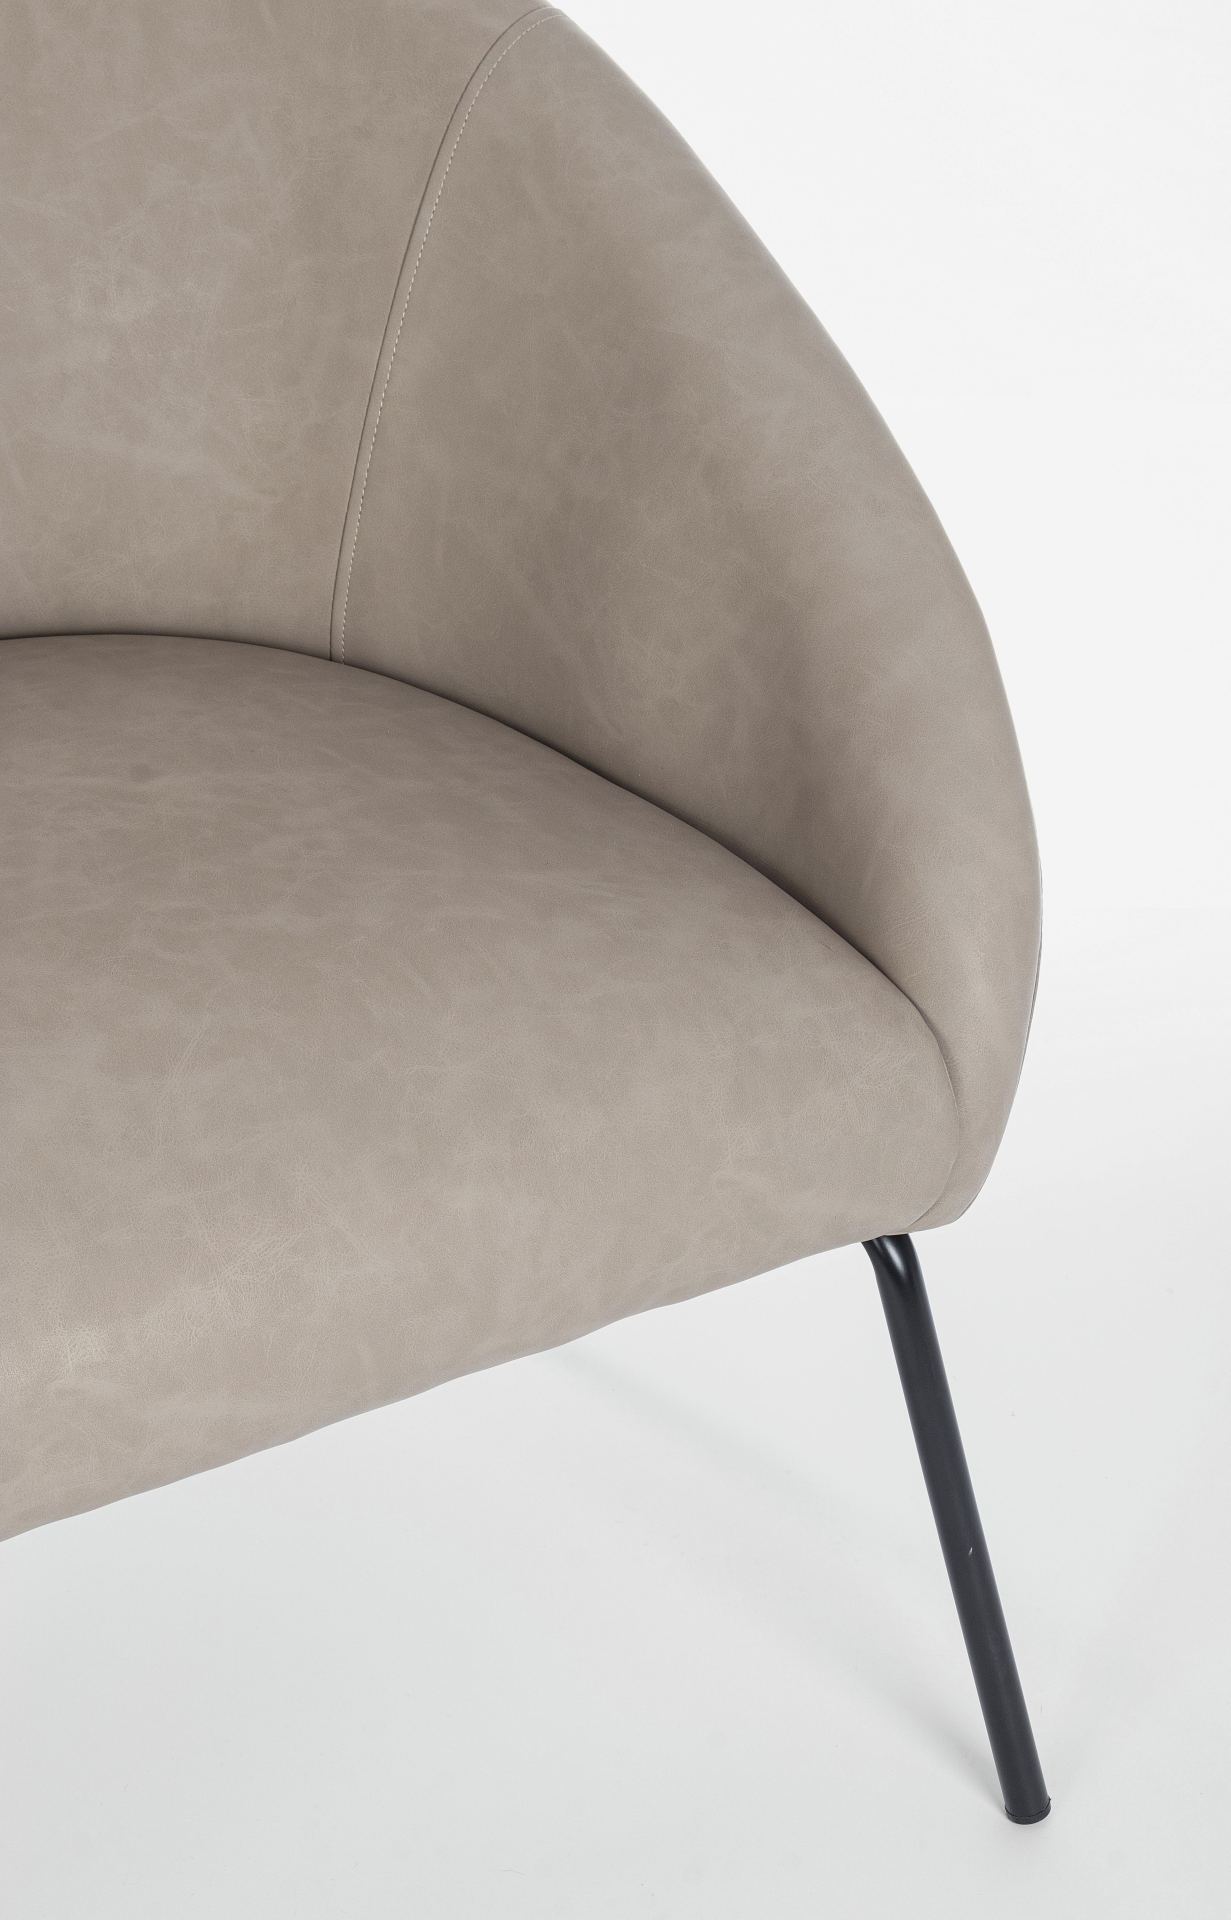 Der Sessel Aiko überzeugt mit seinem modernen Design. Gefertigt wurde er aus Kunstleder, welches einen Taupe Farbton besitzt. Das Gestell ist aus Metall und hat eine schwarze Farbe. Der Sessel besitzt eine Sitzhöhe von 45 cm. Die Breite beträgt 80 cm.